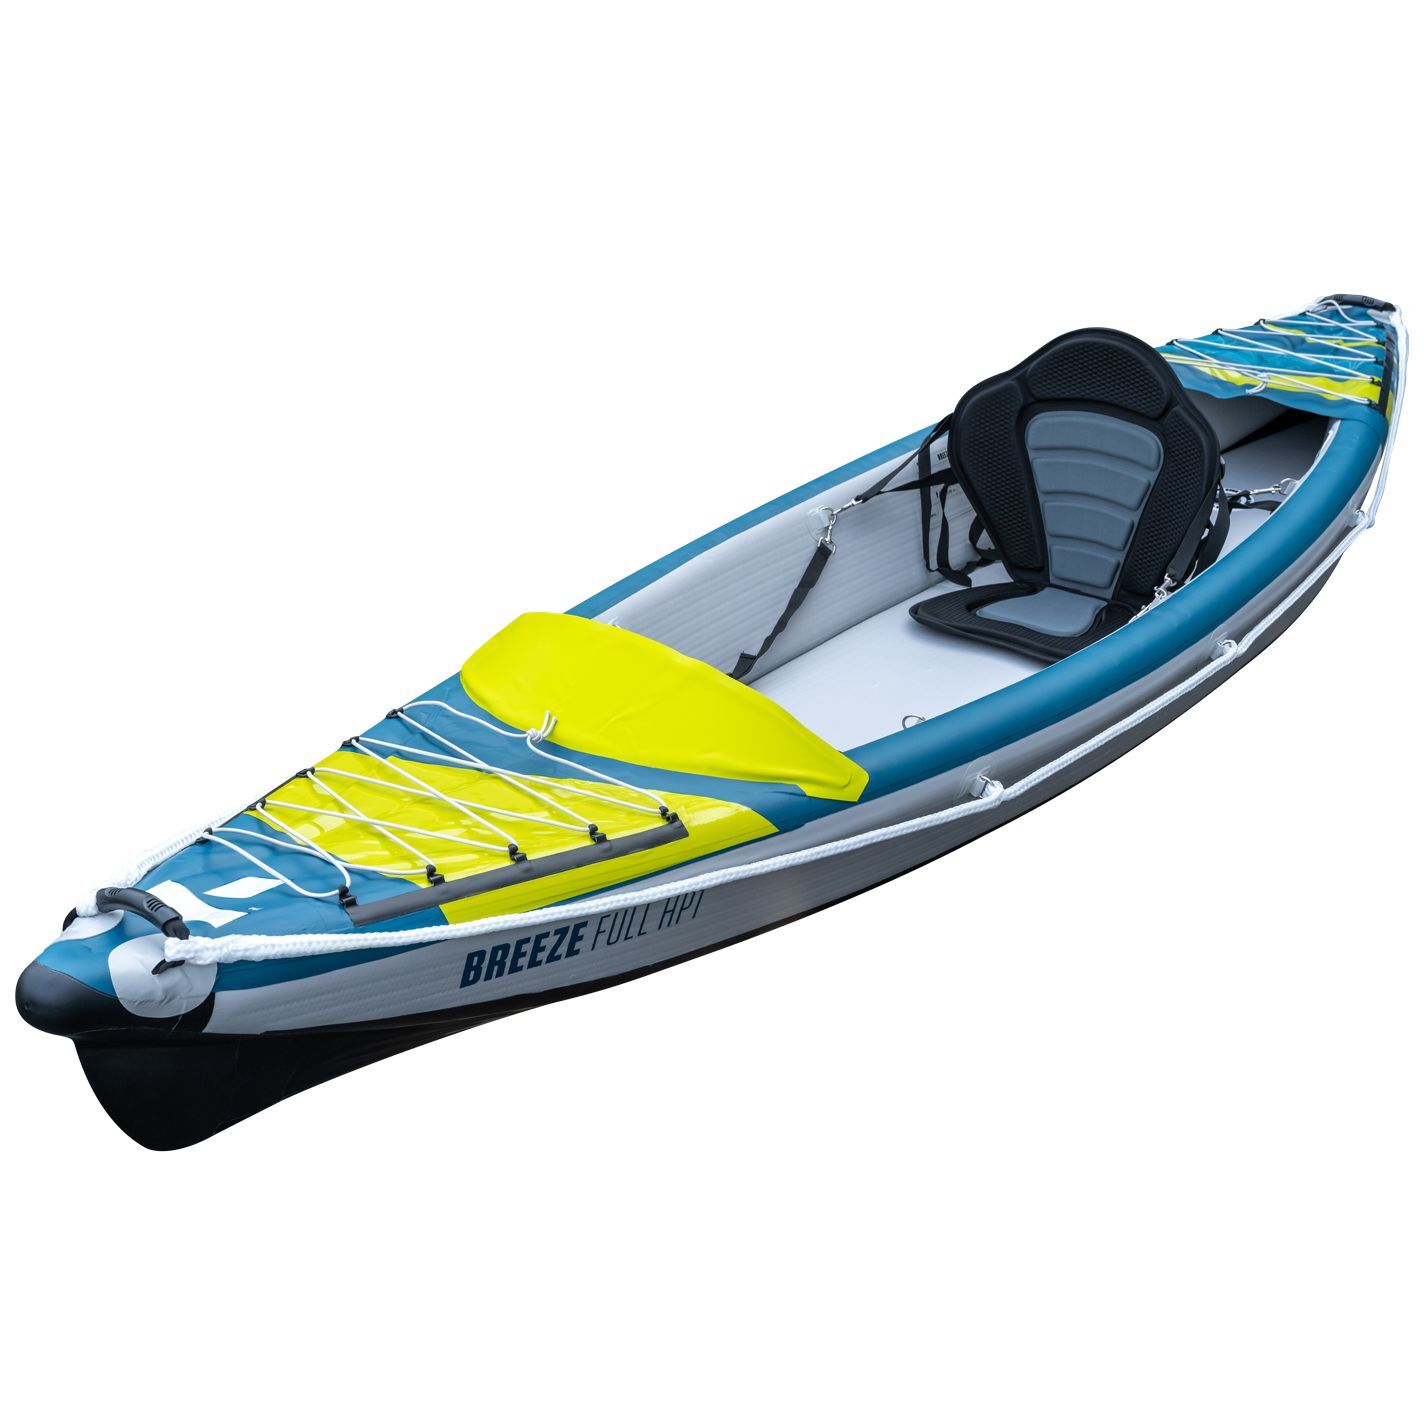 Tahe Outdoor Kayak Air Breeze Full Hp1 - Inflatable kayak